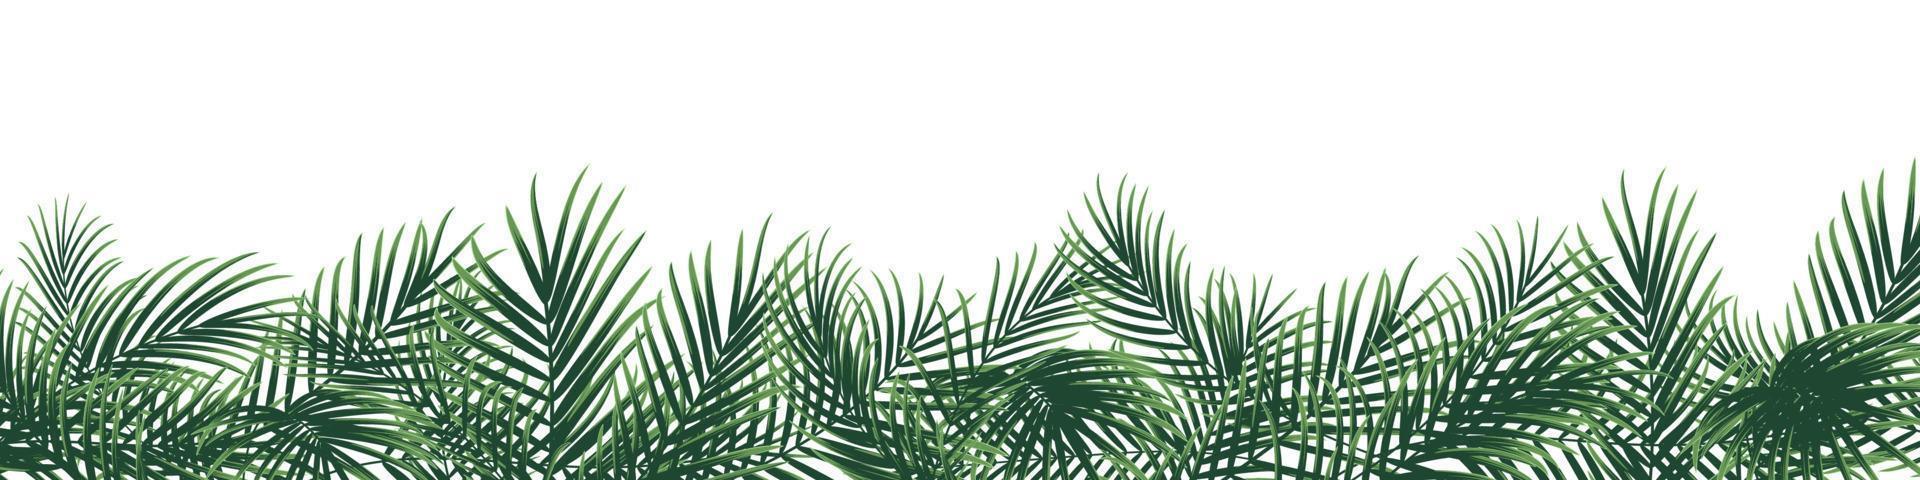 fond tropical lumineux avec feuille de palmier vecteur